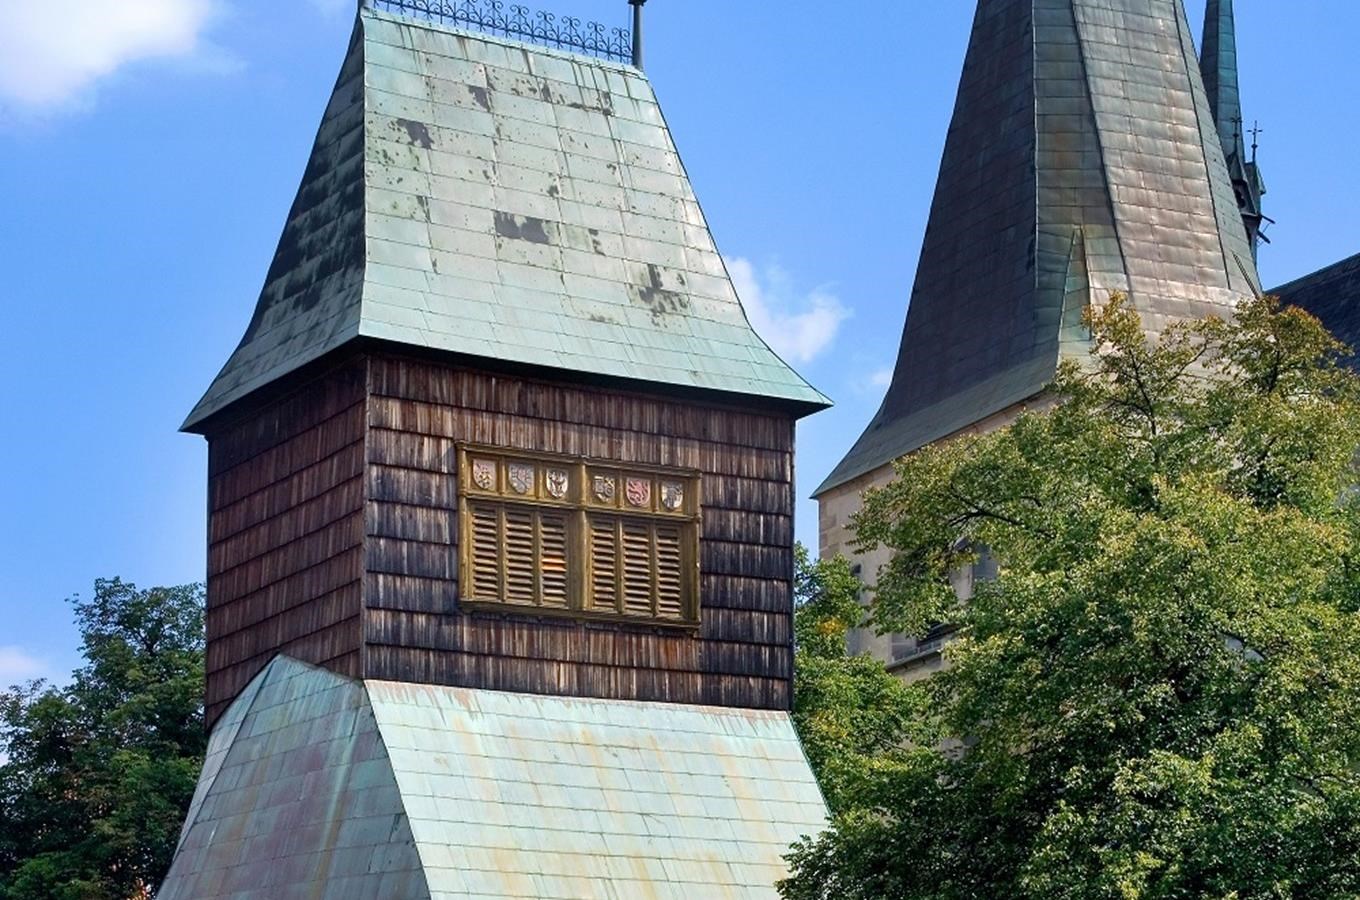 Velká zvonice v Rakovníku